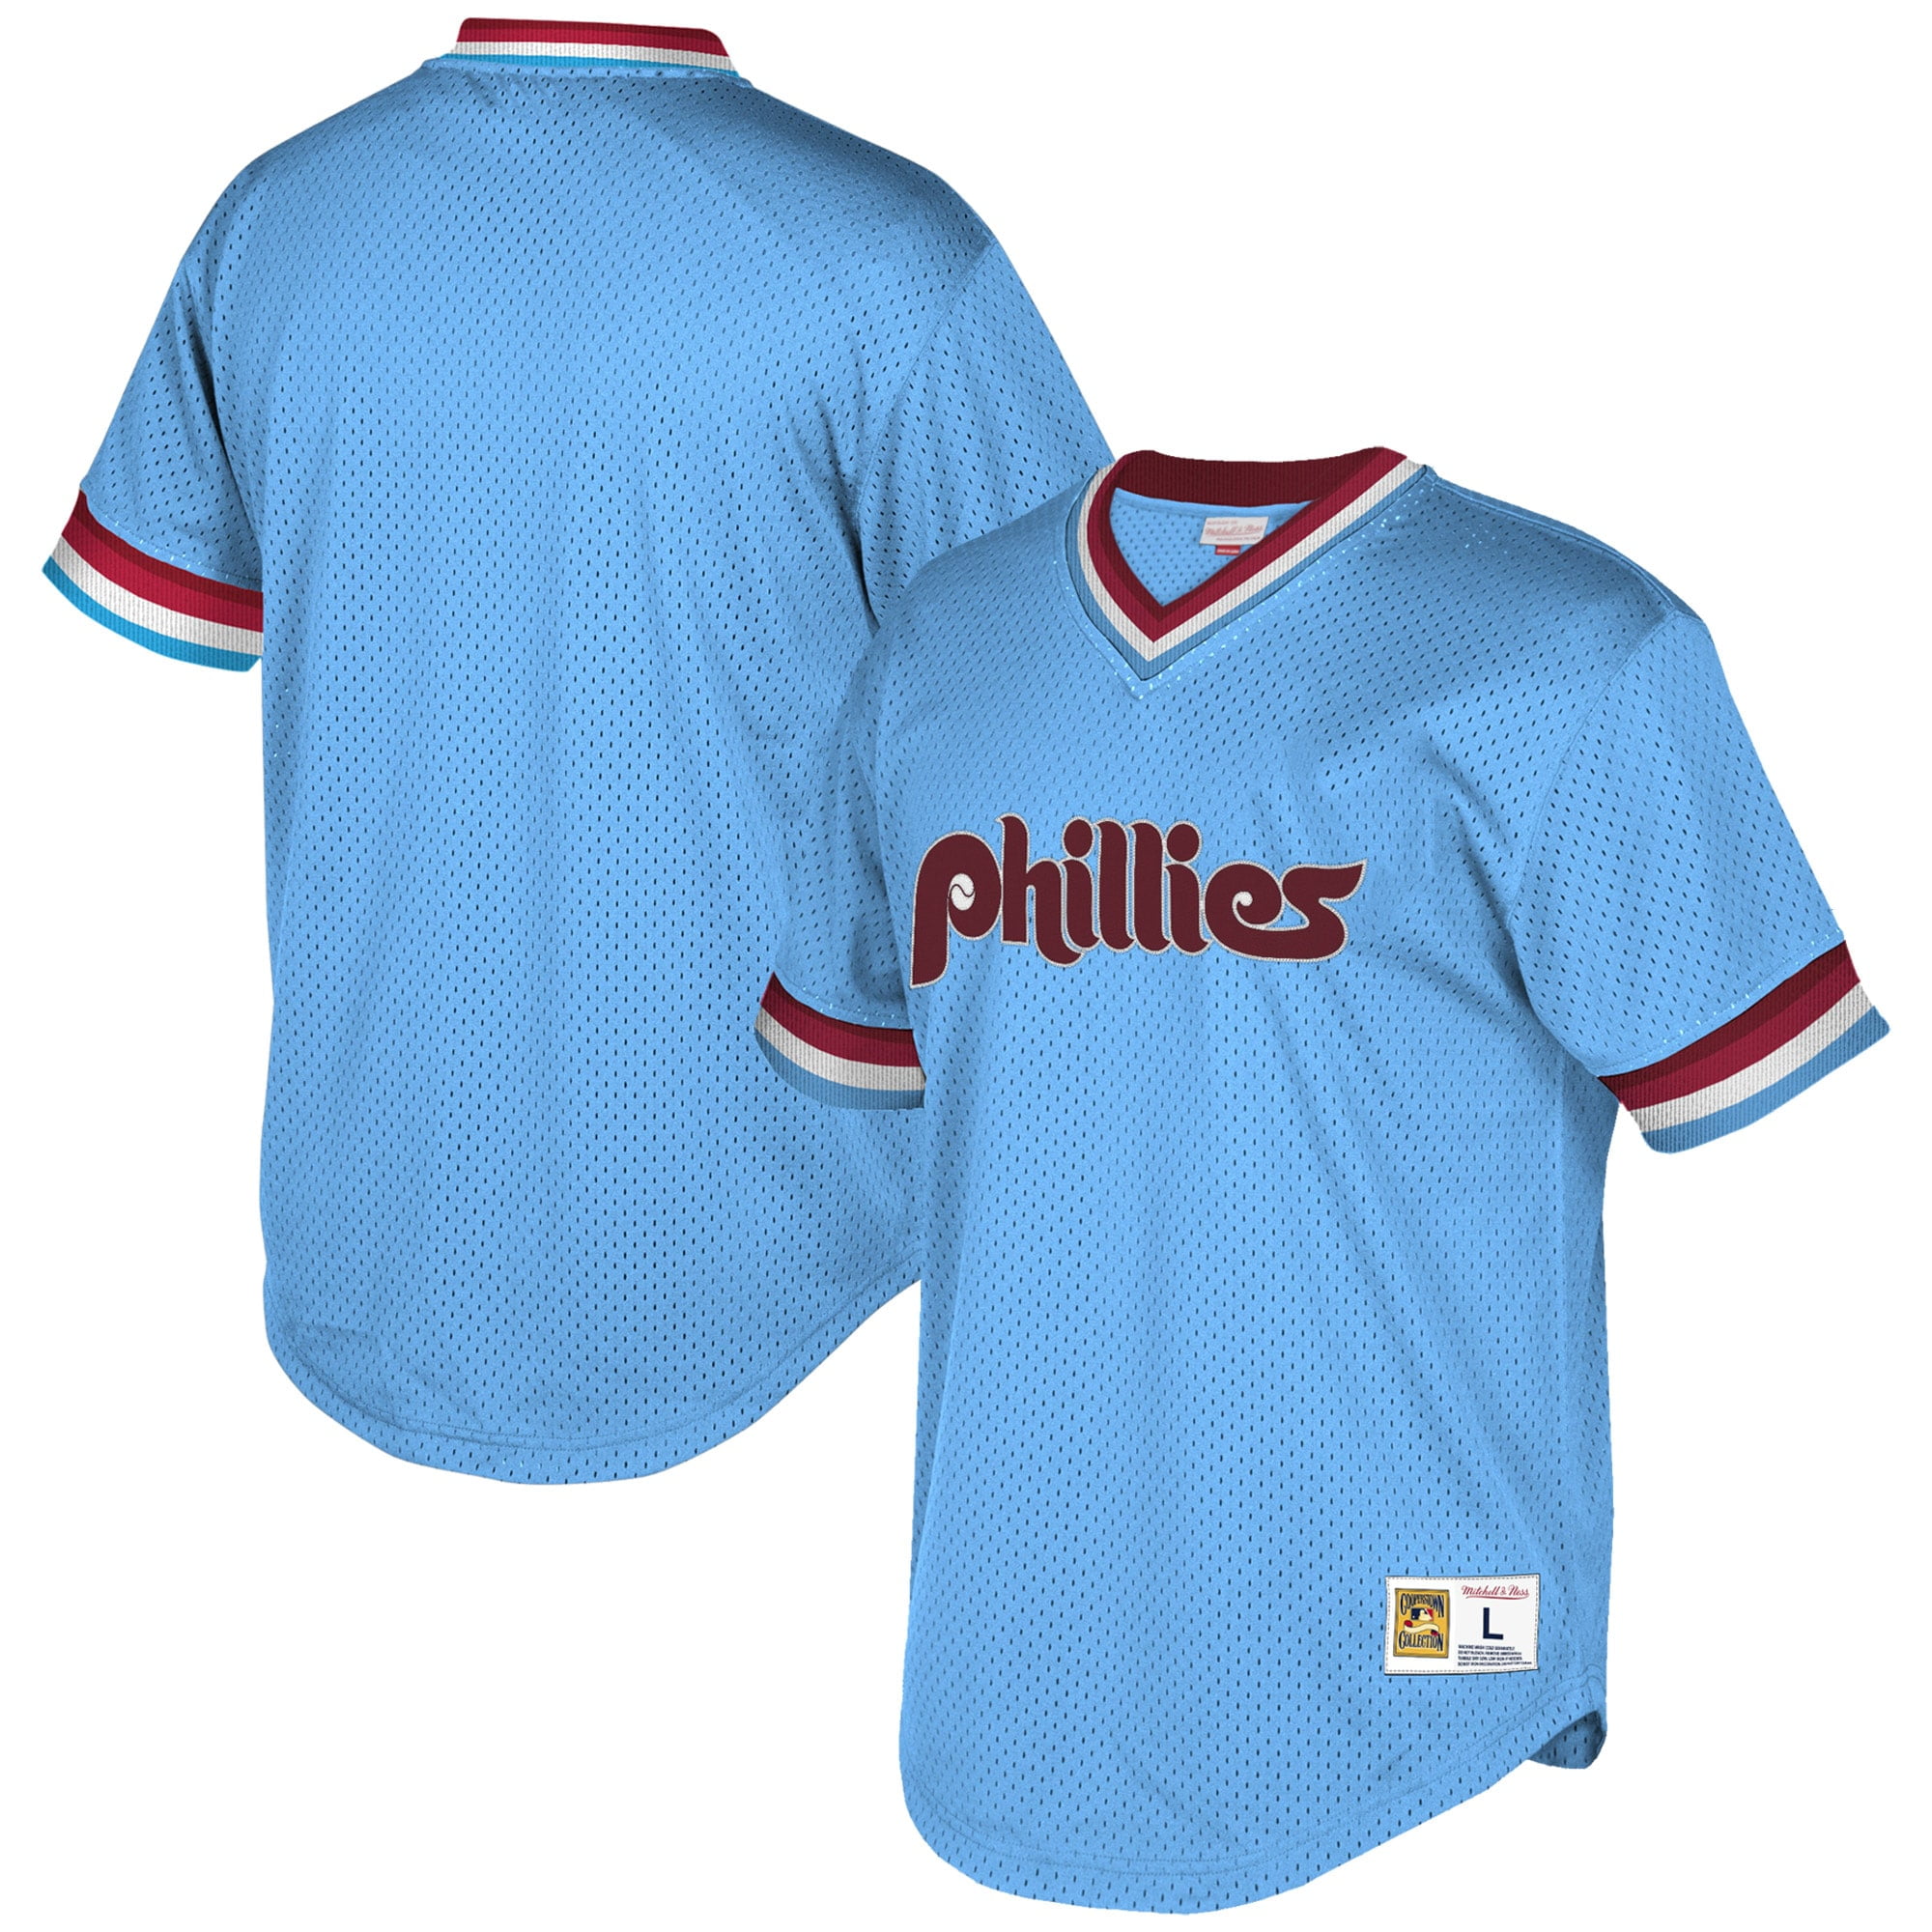 phillies old school jersey